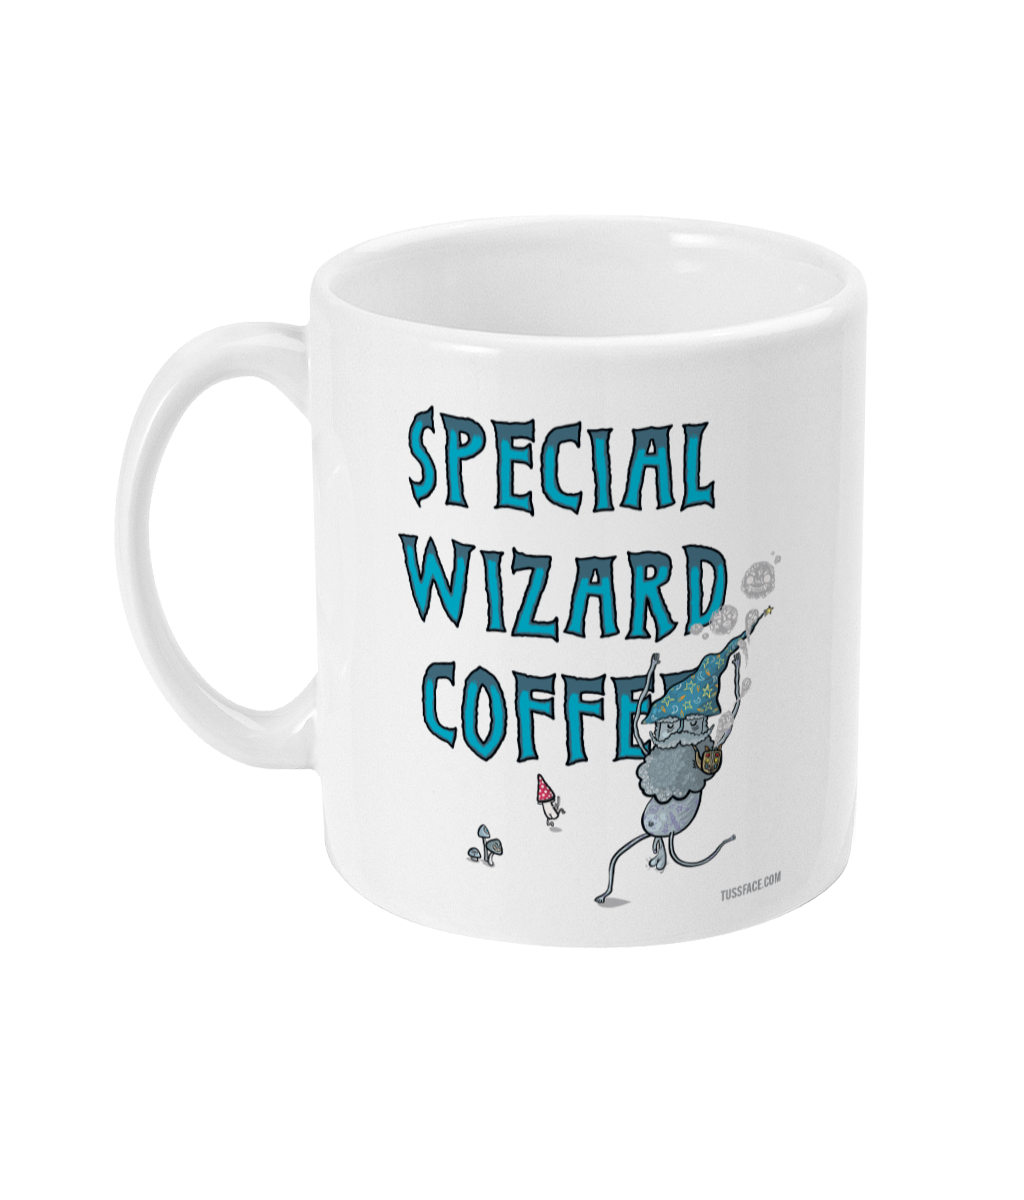 Special Wizard Coffee / Koffi Arbennek Pystrier - TussFace Mug